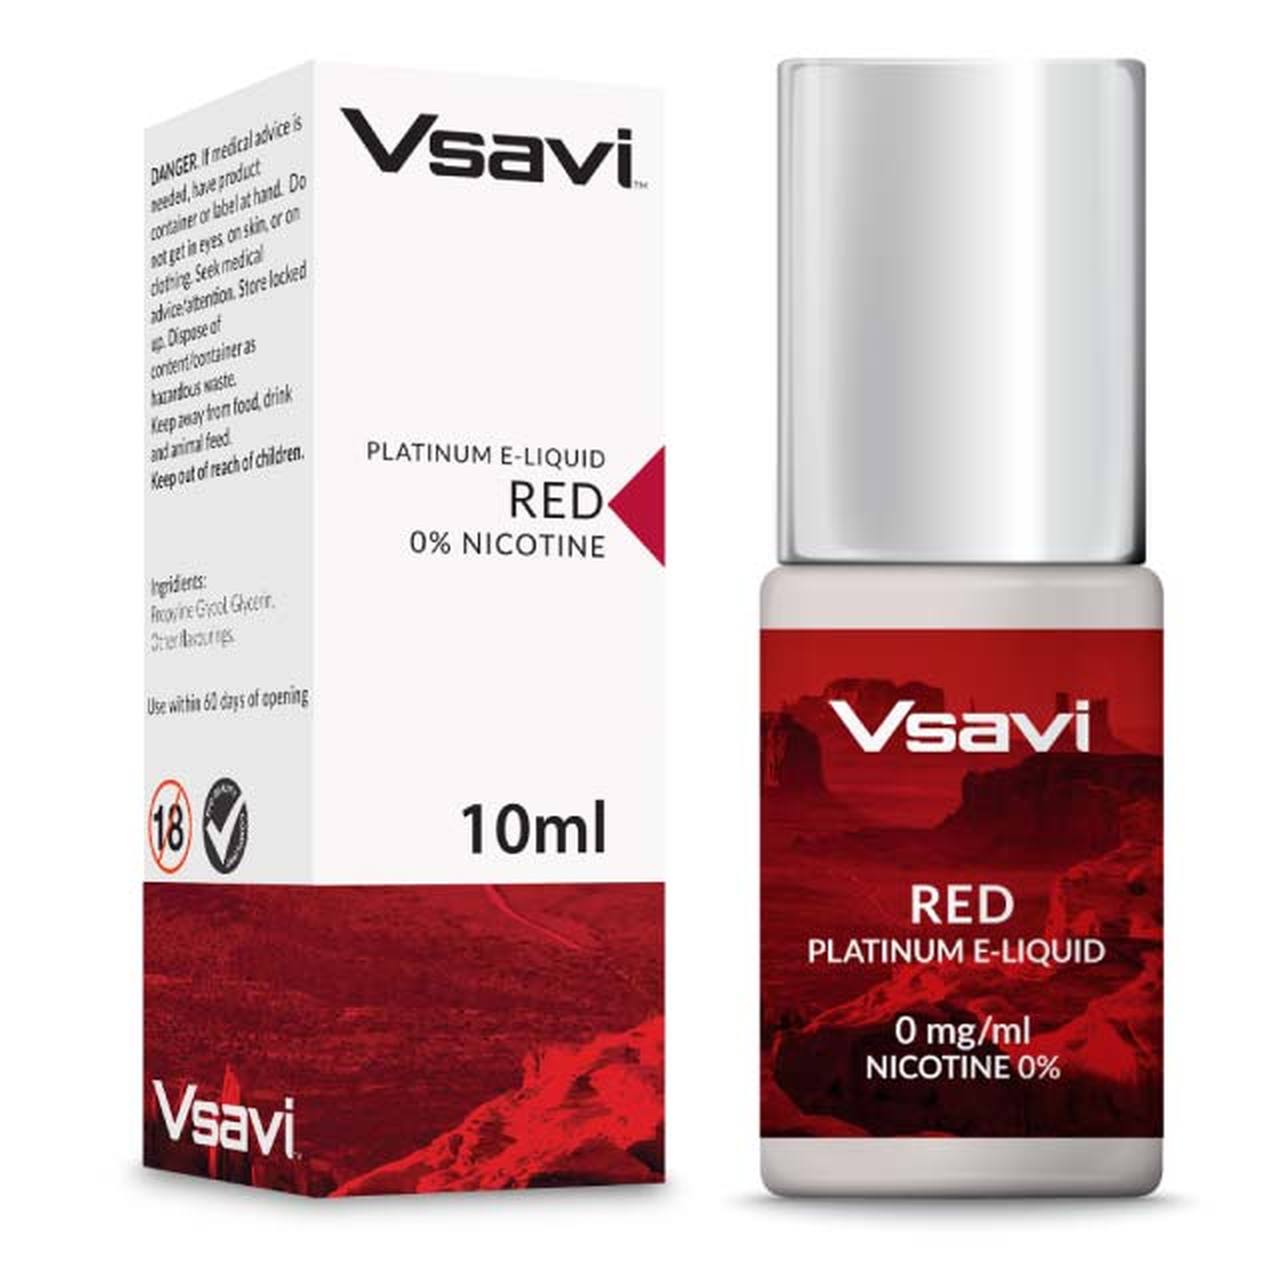 VSAVI Platinum E-liquid